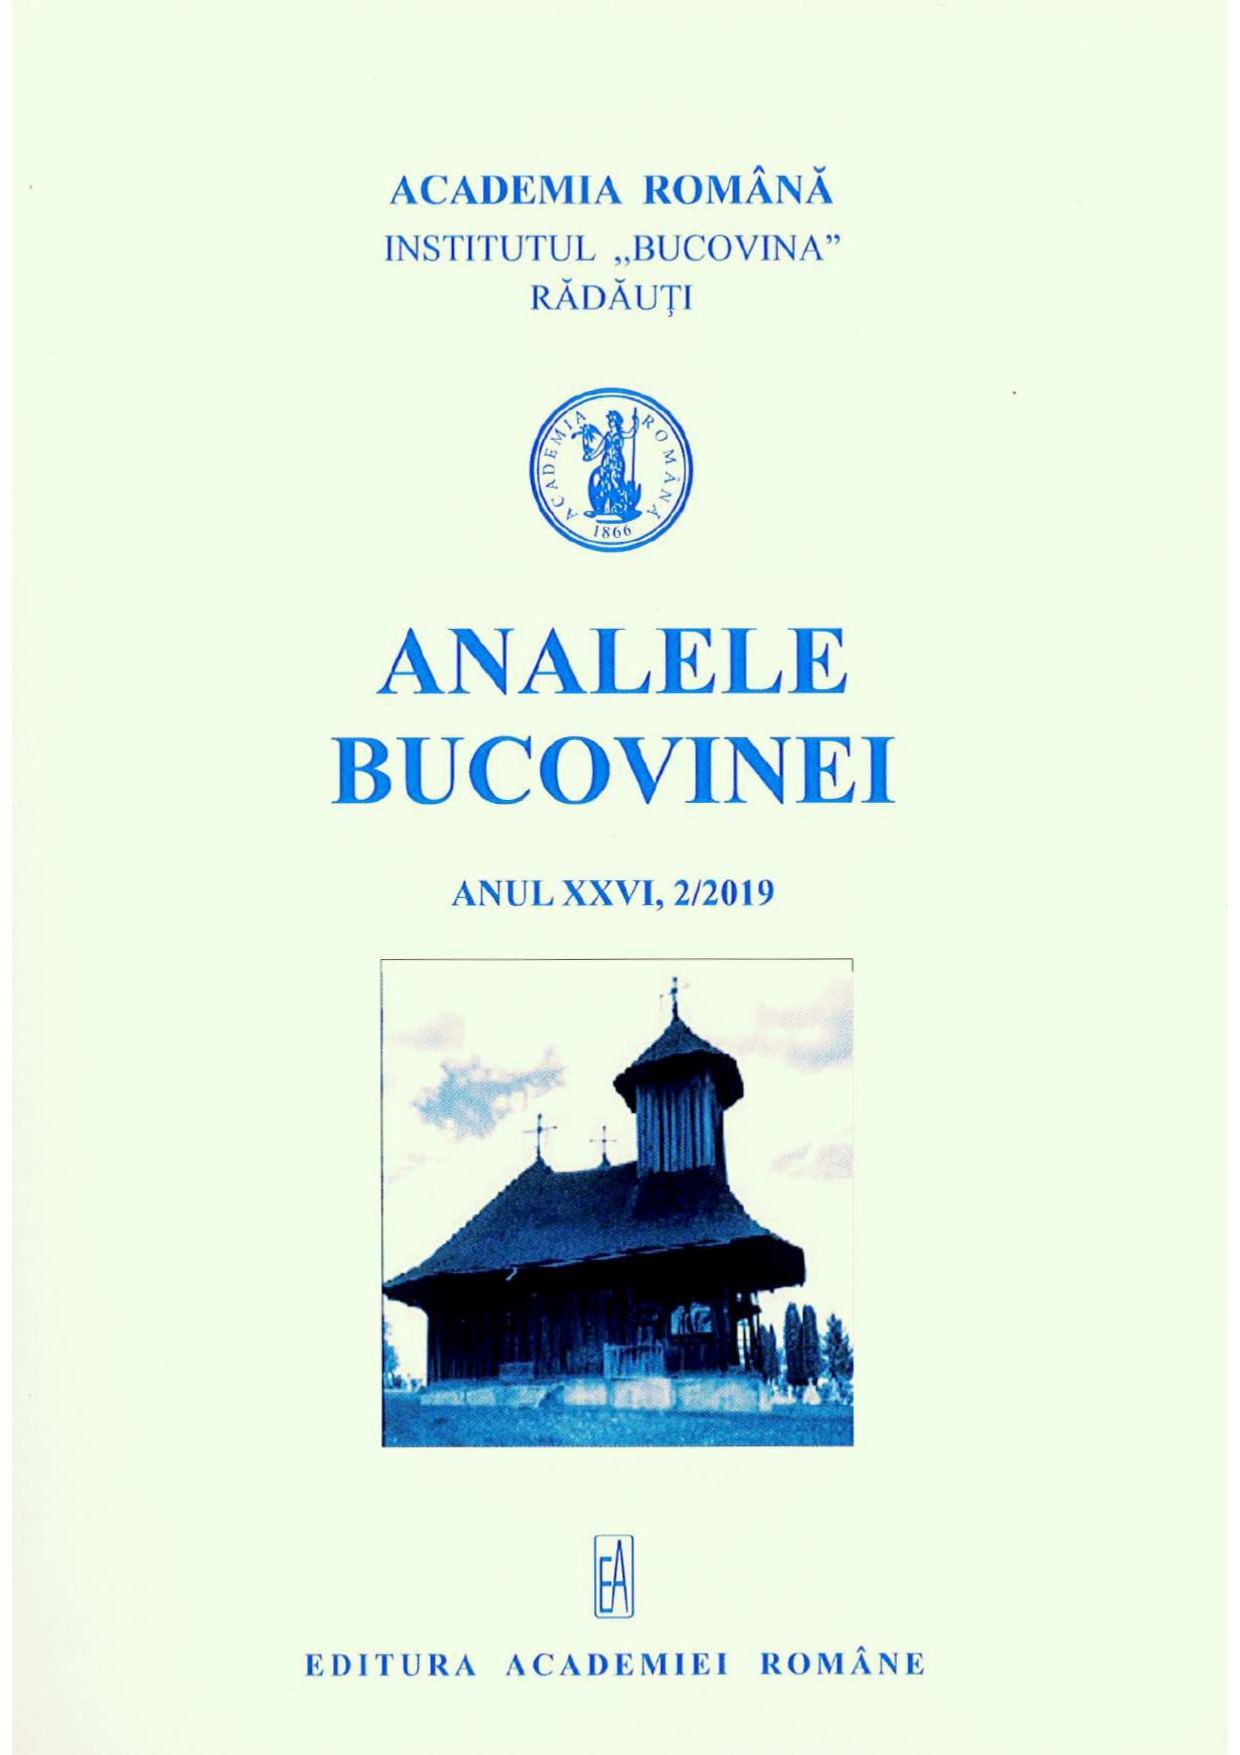 Ștefan Ștefănescu (May 24, 1929 – December 29, 2018) Cover Image